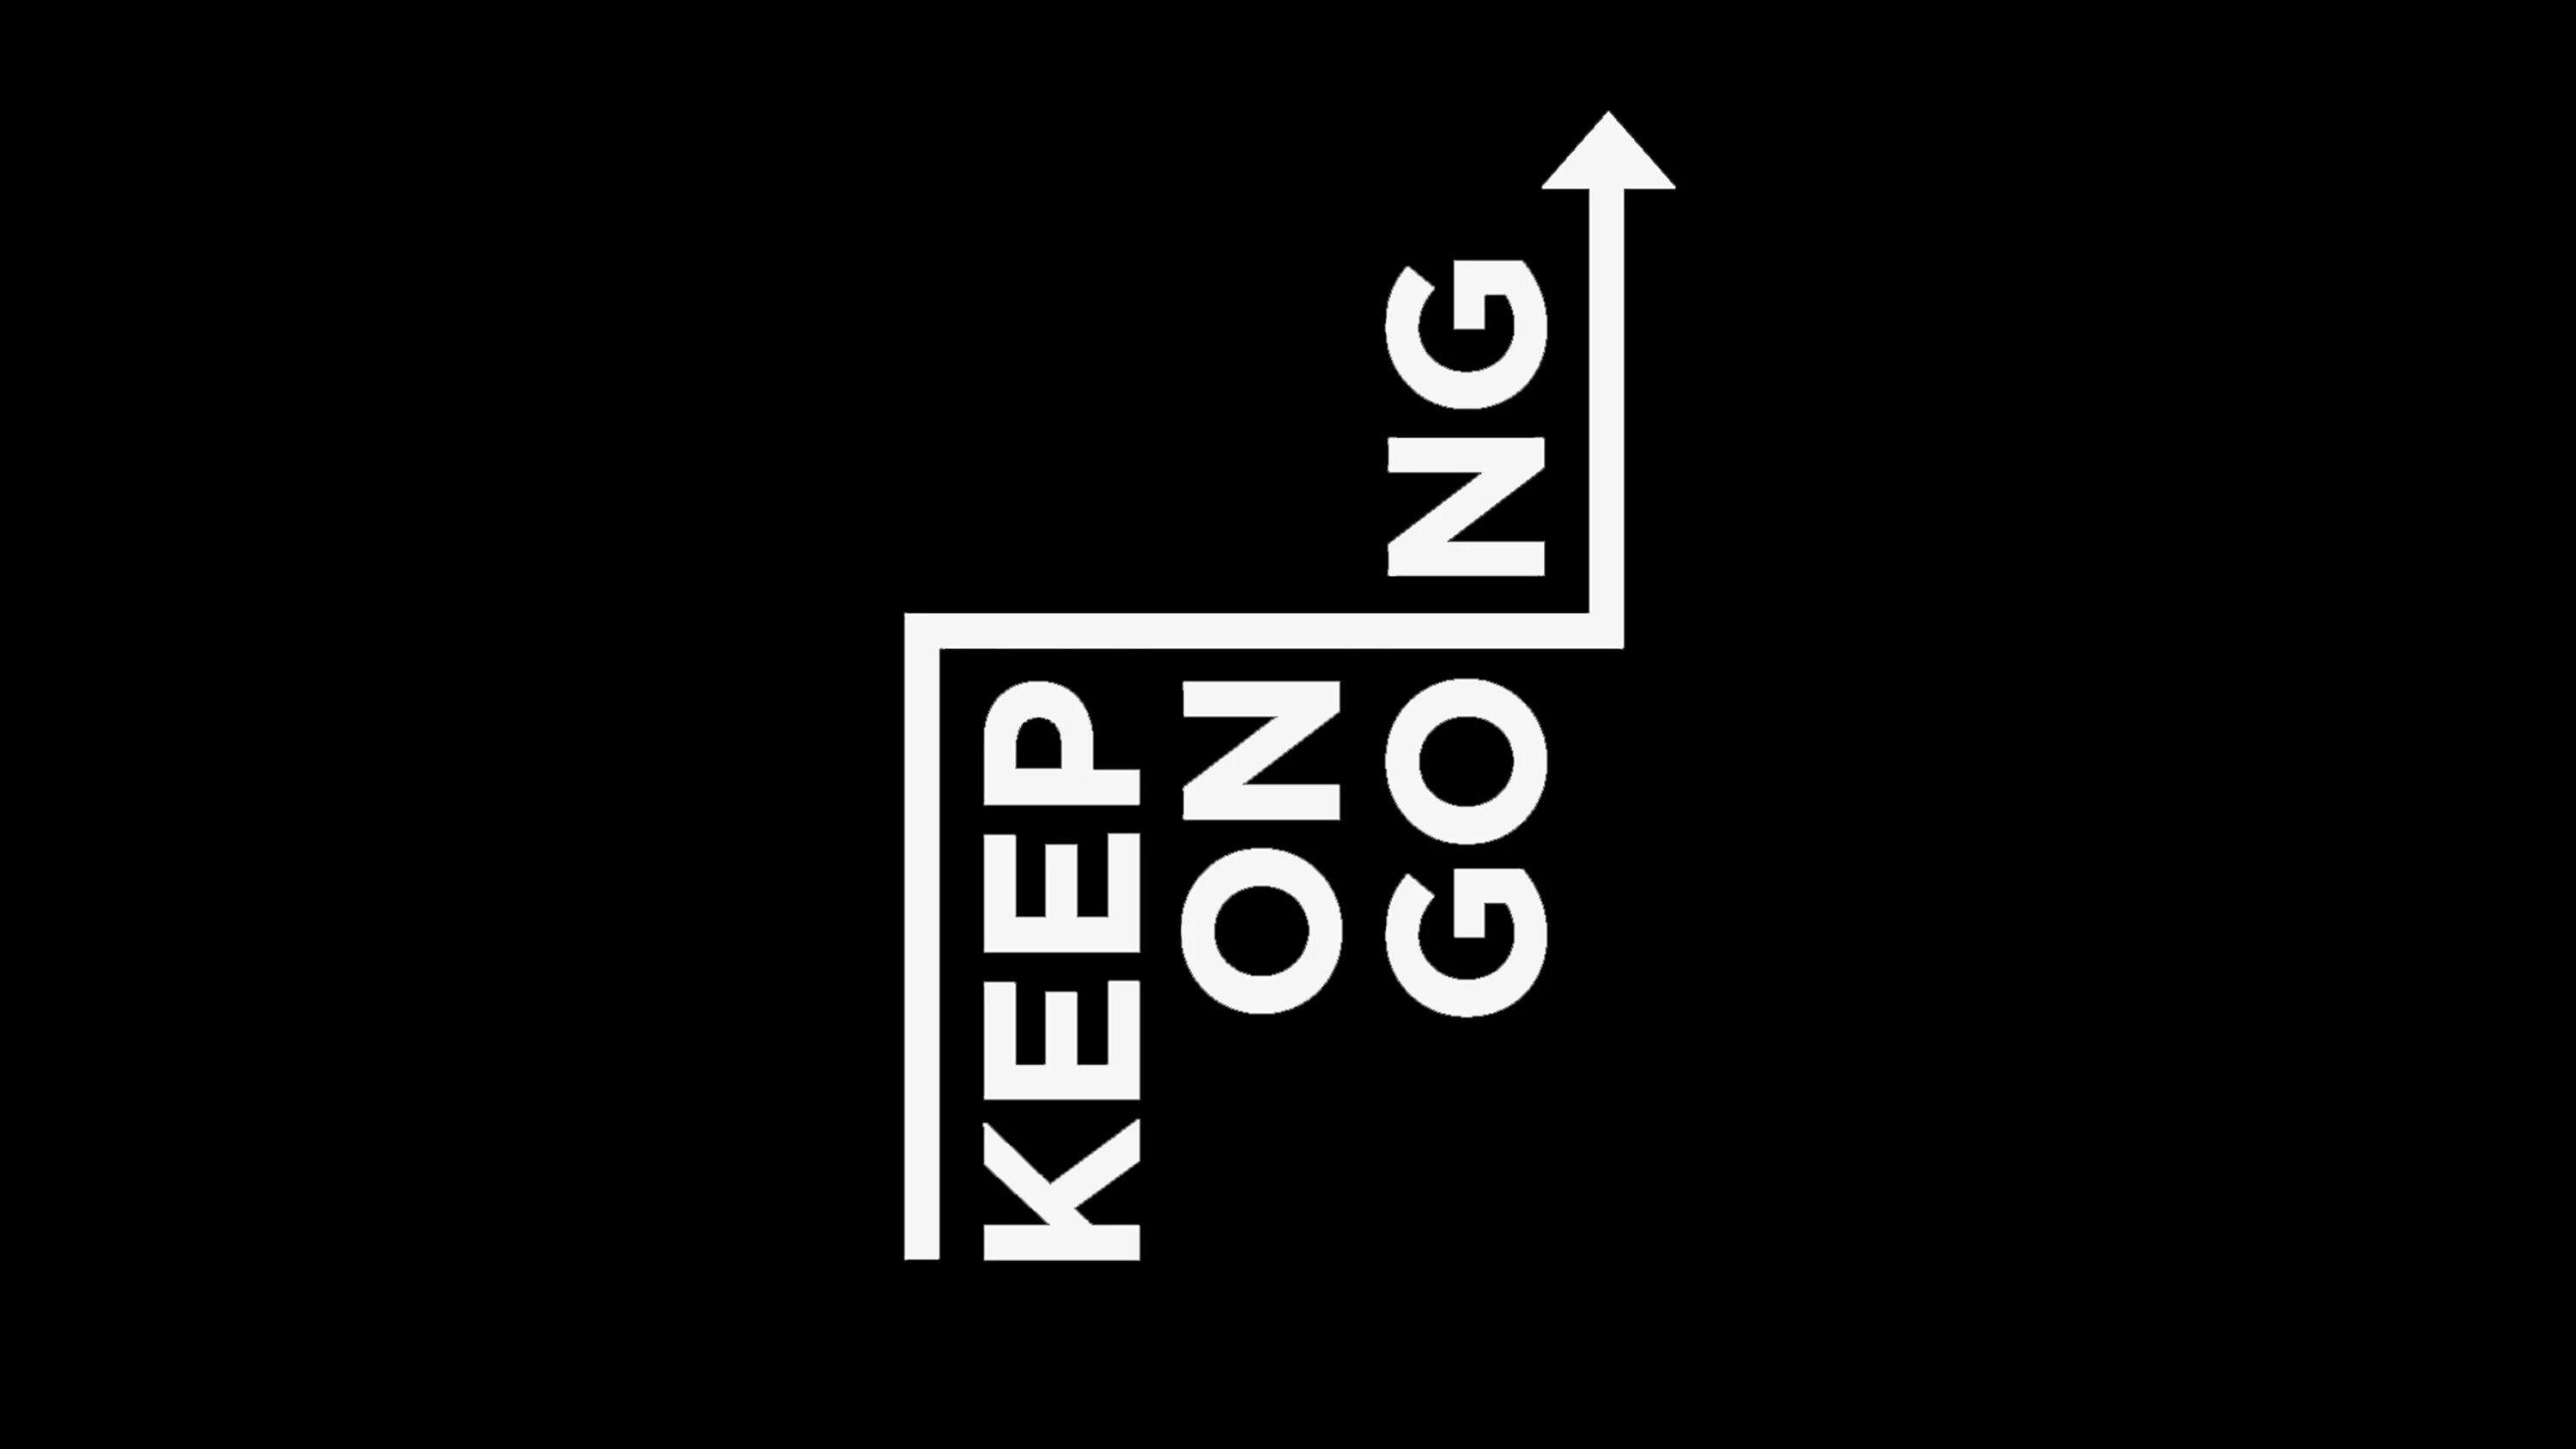 Go on doing keep on doing. Keep going. Keep going заставка. Keep on going. Обои на ПК.